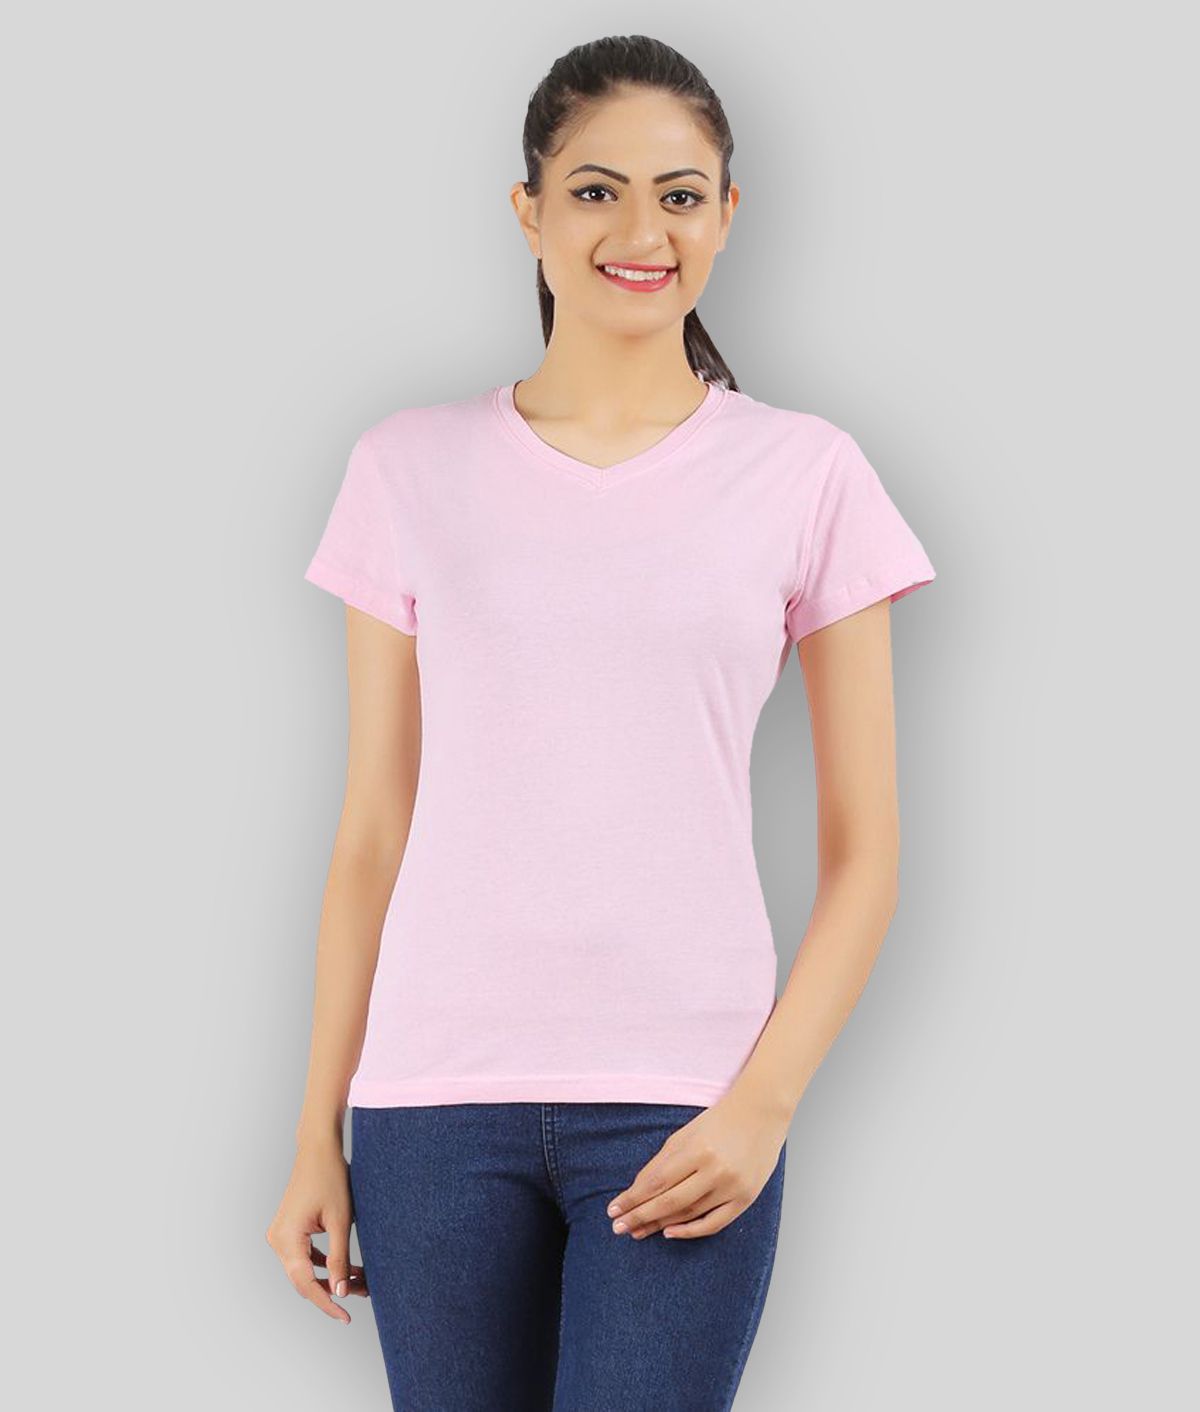     			Ap'pulse - Pink Cotton Regular Fit Women's T-Shirt ( Pack of 1 )